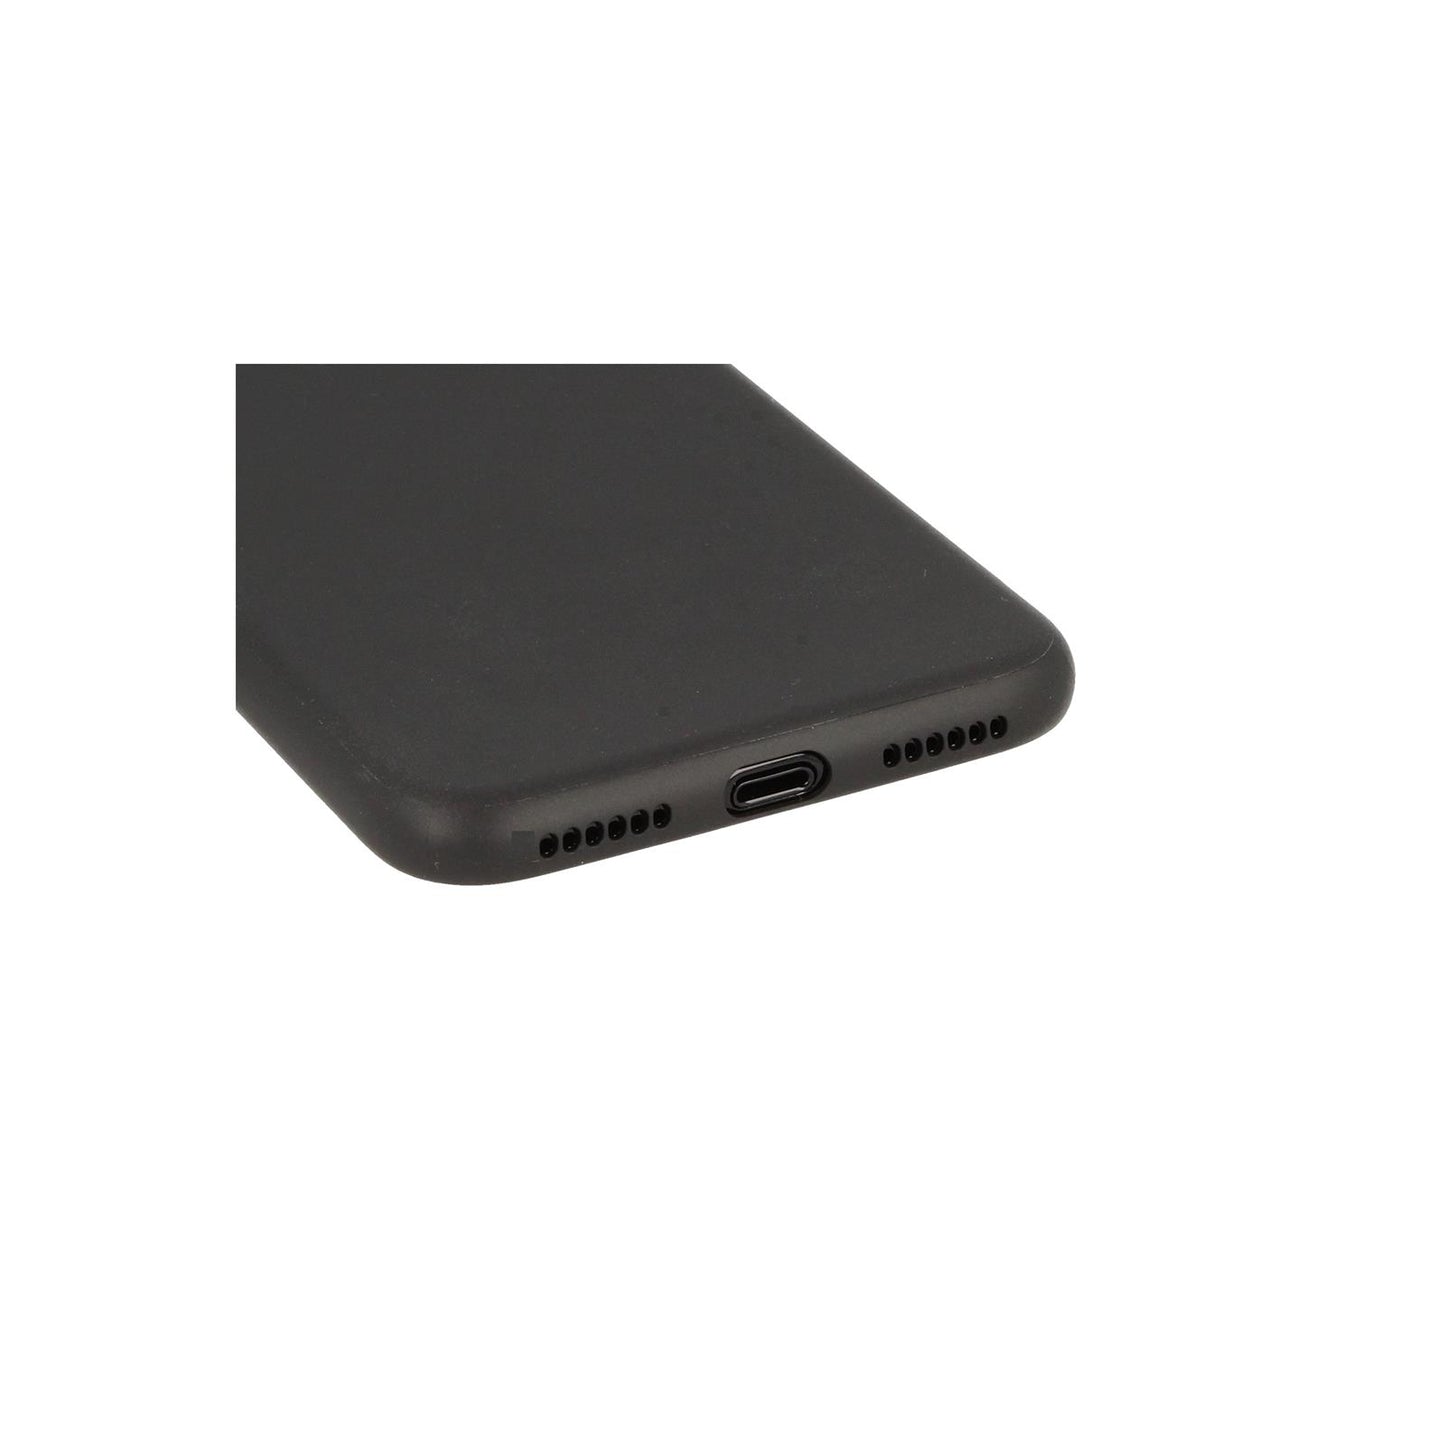 Hülle für Apple iPhone X/Xs Handyhülle Silikon Tasche Case Cover Schwarz